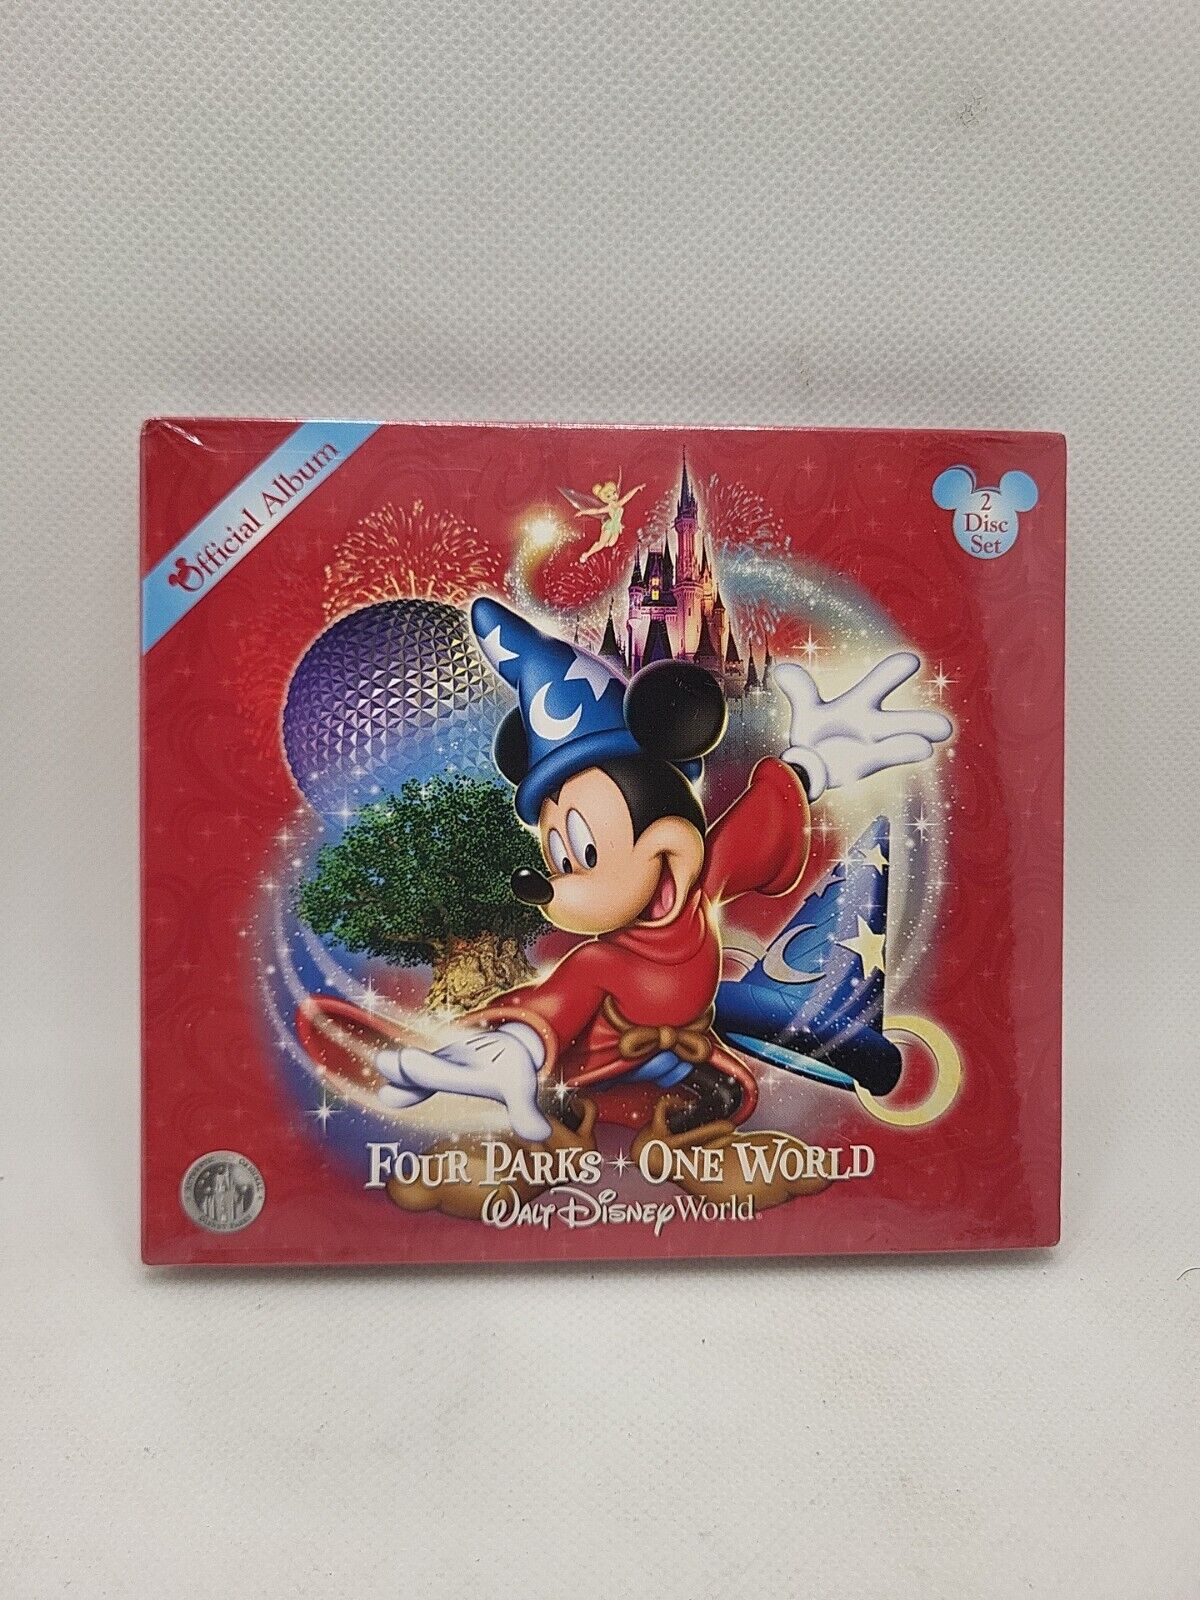 Walt Disney World Four Parks One World Official Album 2 CD Special Set